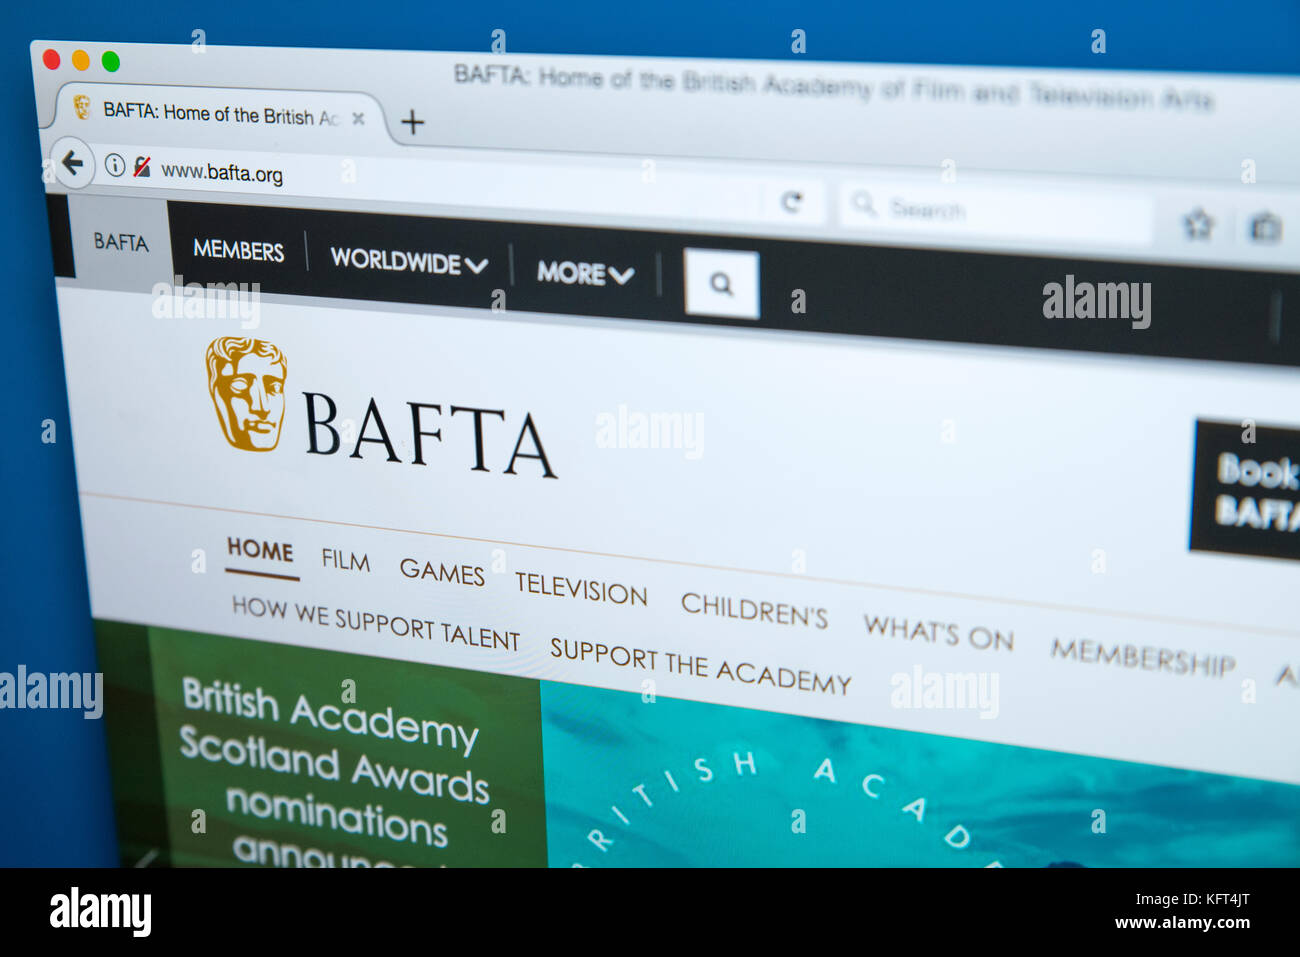 Londres, Reino Unido - 17 de octubre de 2017: la página de inicio del sitio web oficial de BAFTA, la academia británica de las Artes Cinematográficas y la televisión, el 17 de octubre de 2017 Foto de stock